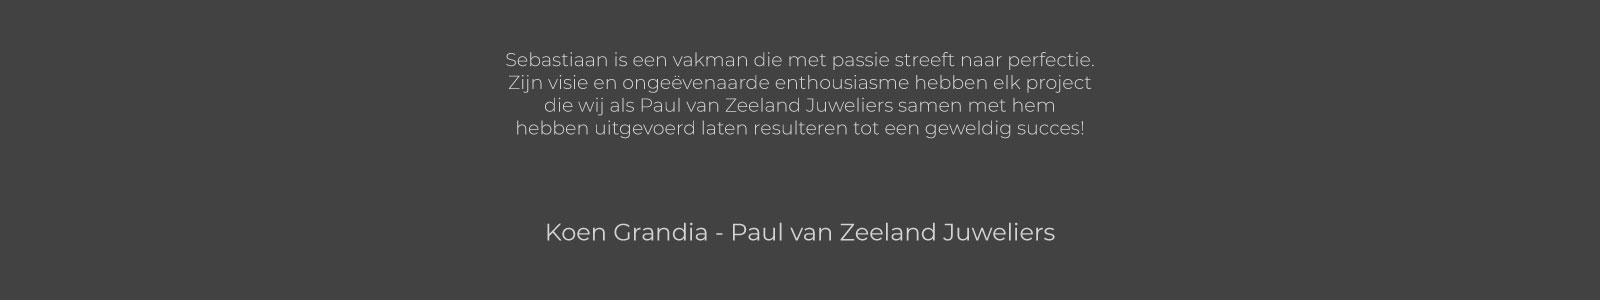 Koen Grandia - Paul van Zeeland Juweliers